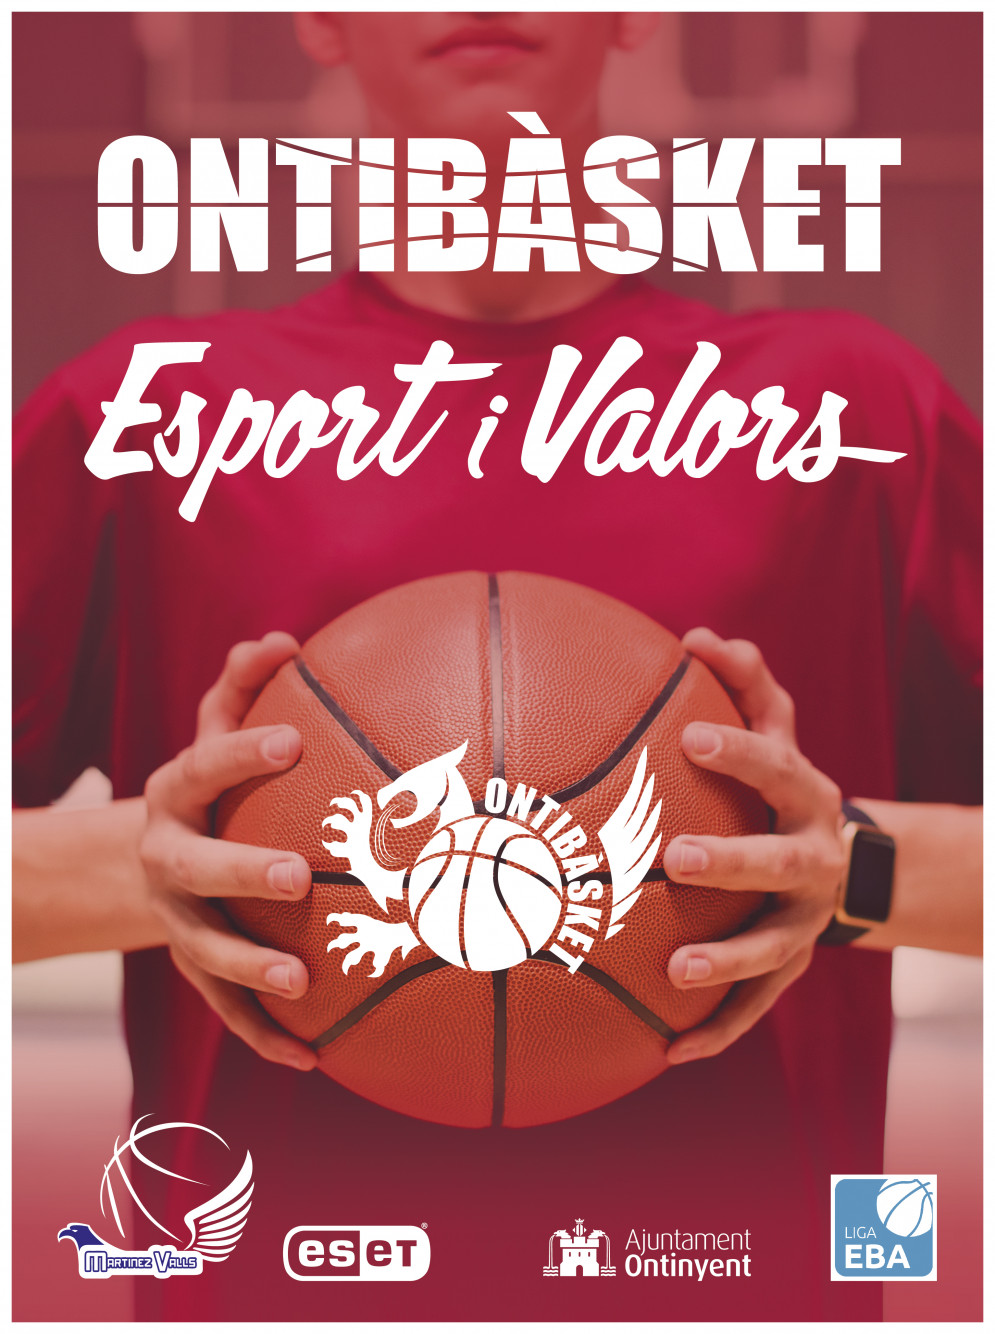 El Club Martínez Valls presenta la campanya &#039;Ontibàsket. Esport i Valors&#039;